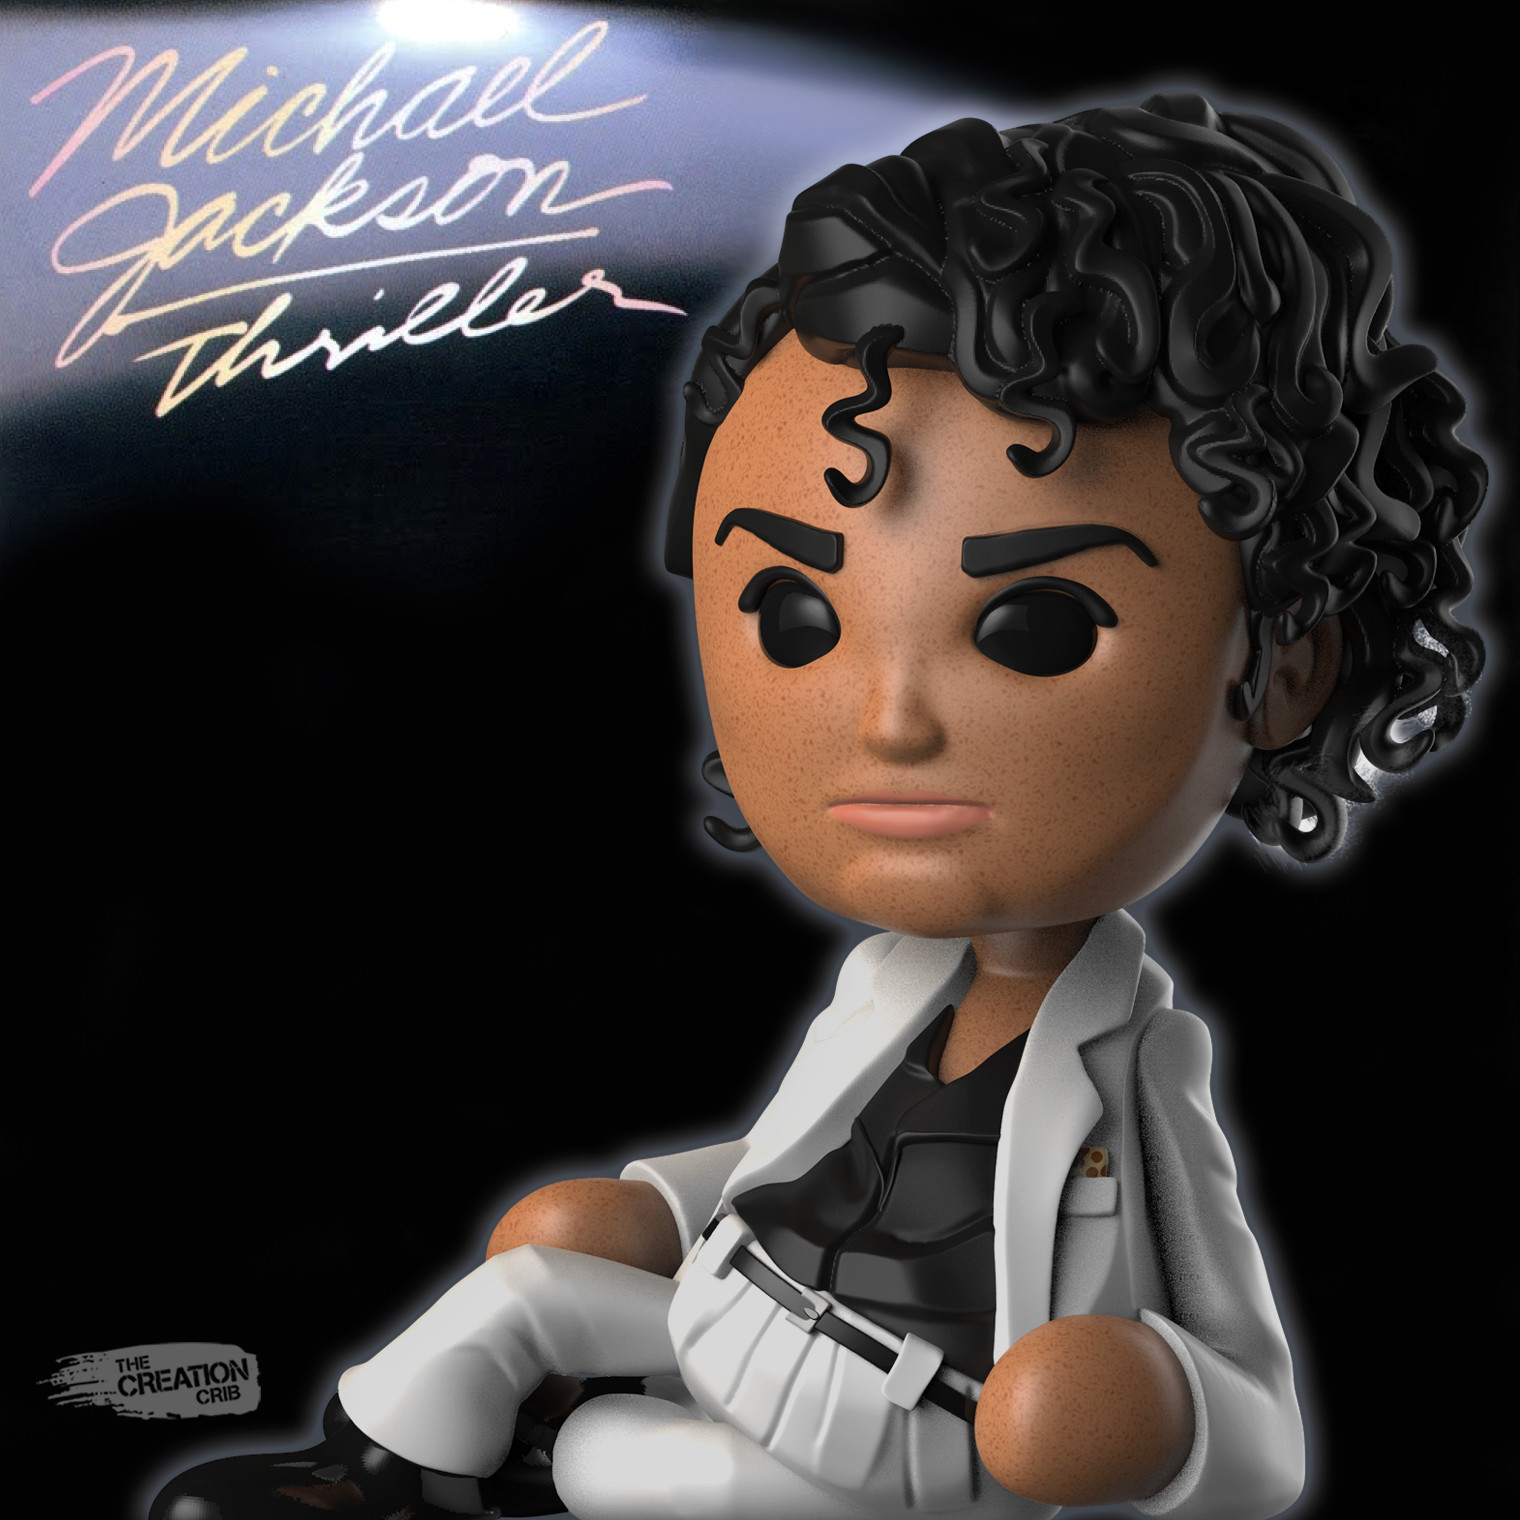 ArtStation - Cribblet Covers Michael Jackson Thriller